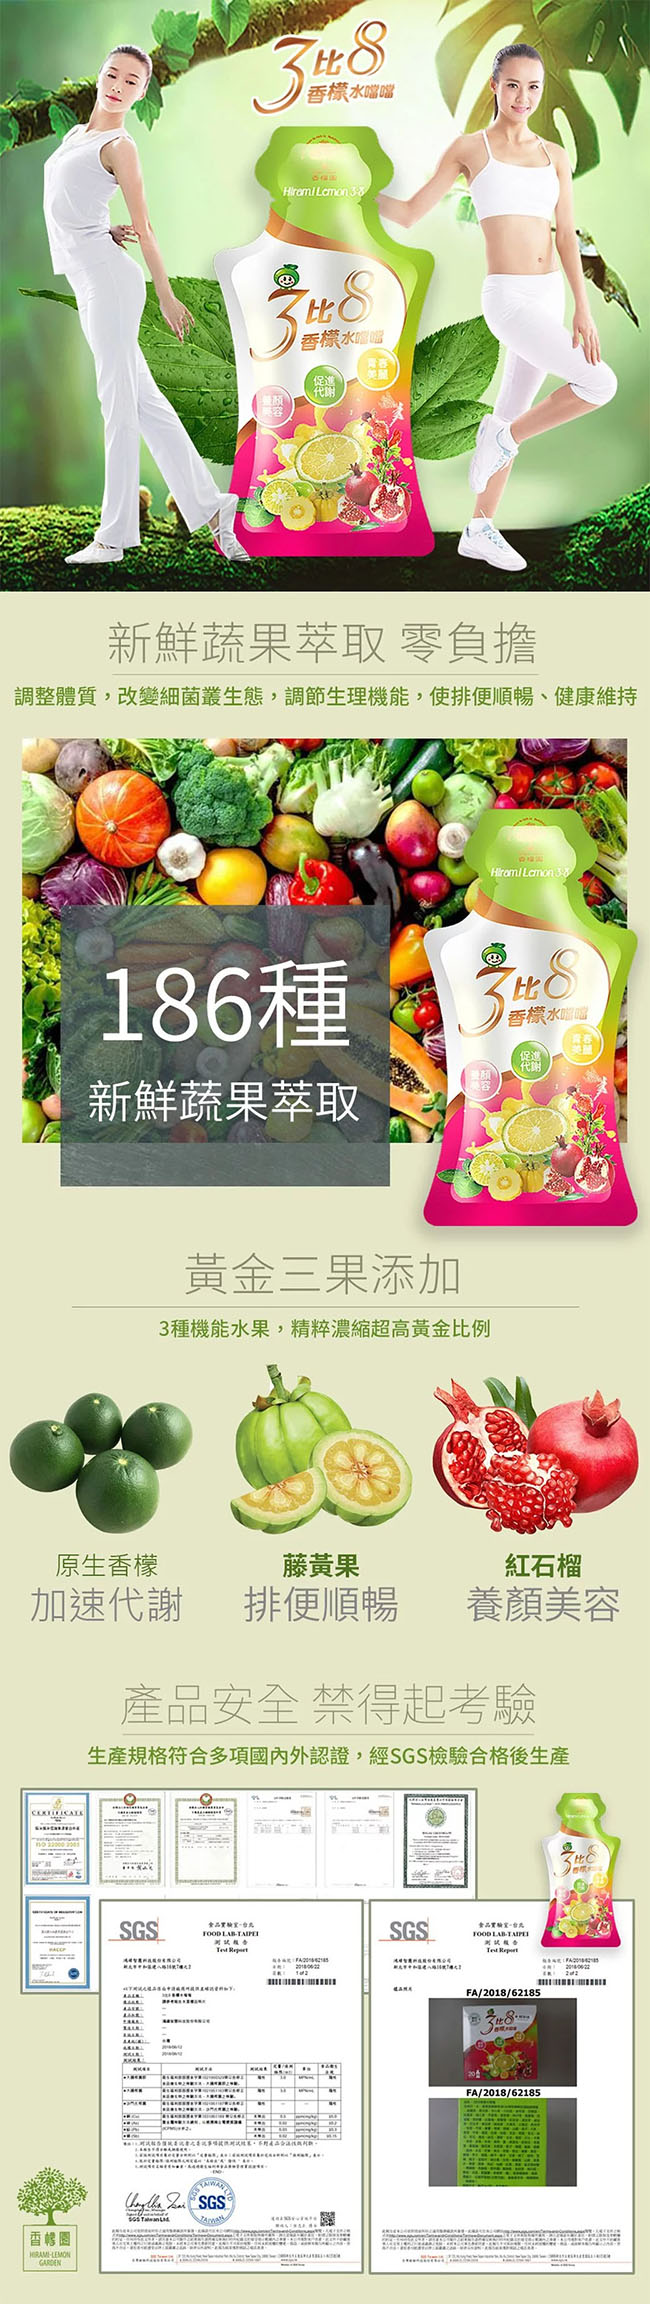 【香檬園】台灣原生種有機香檬原汁6入+香檬3比8水噹噹x1盒